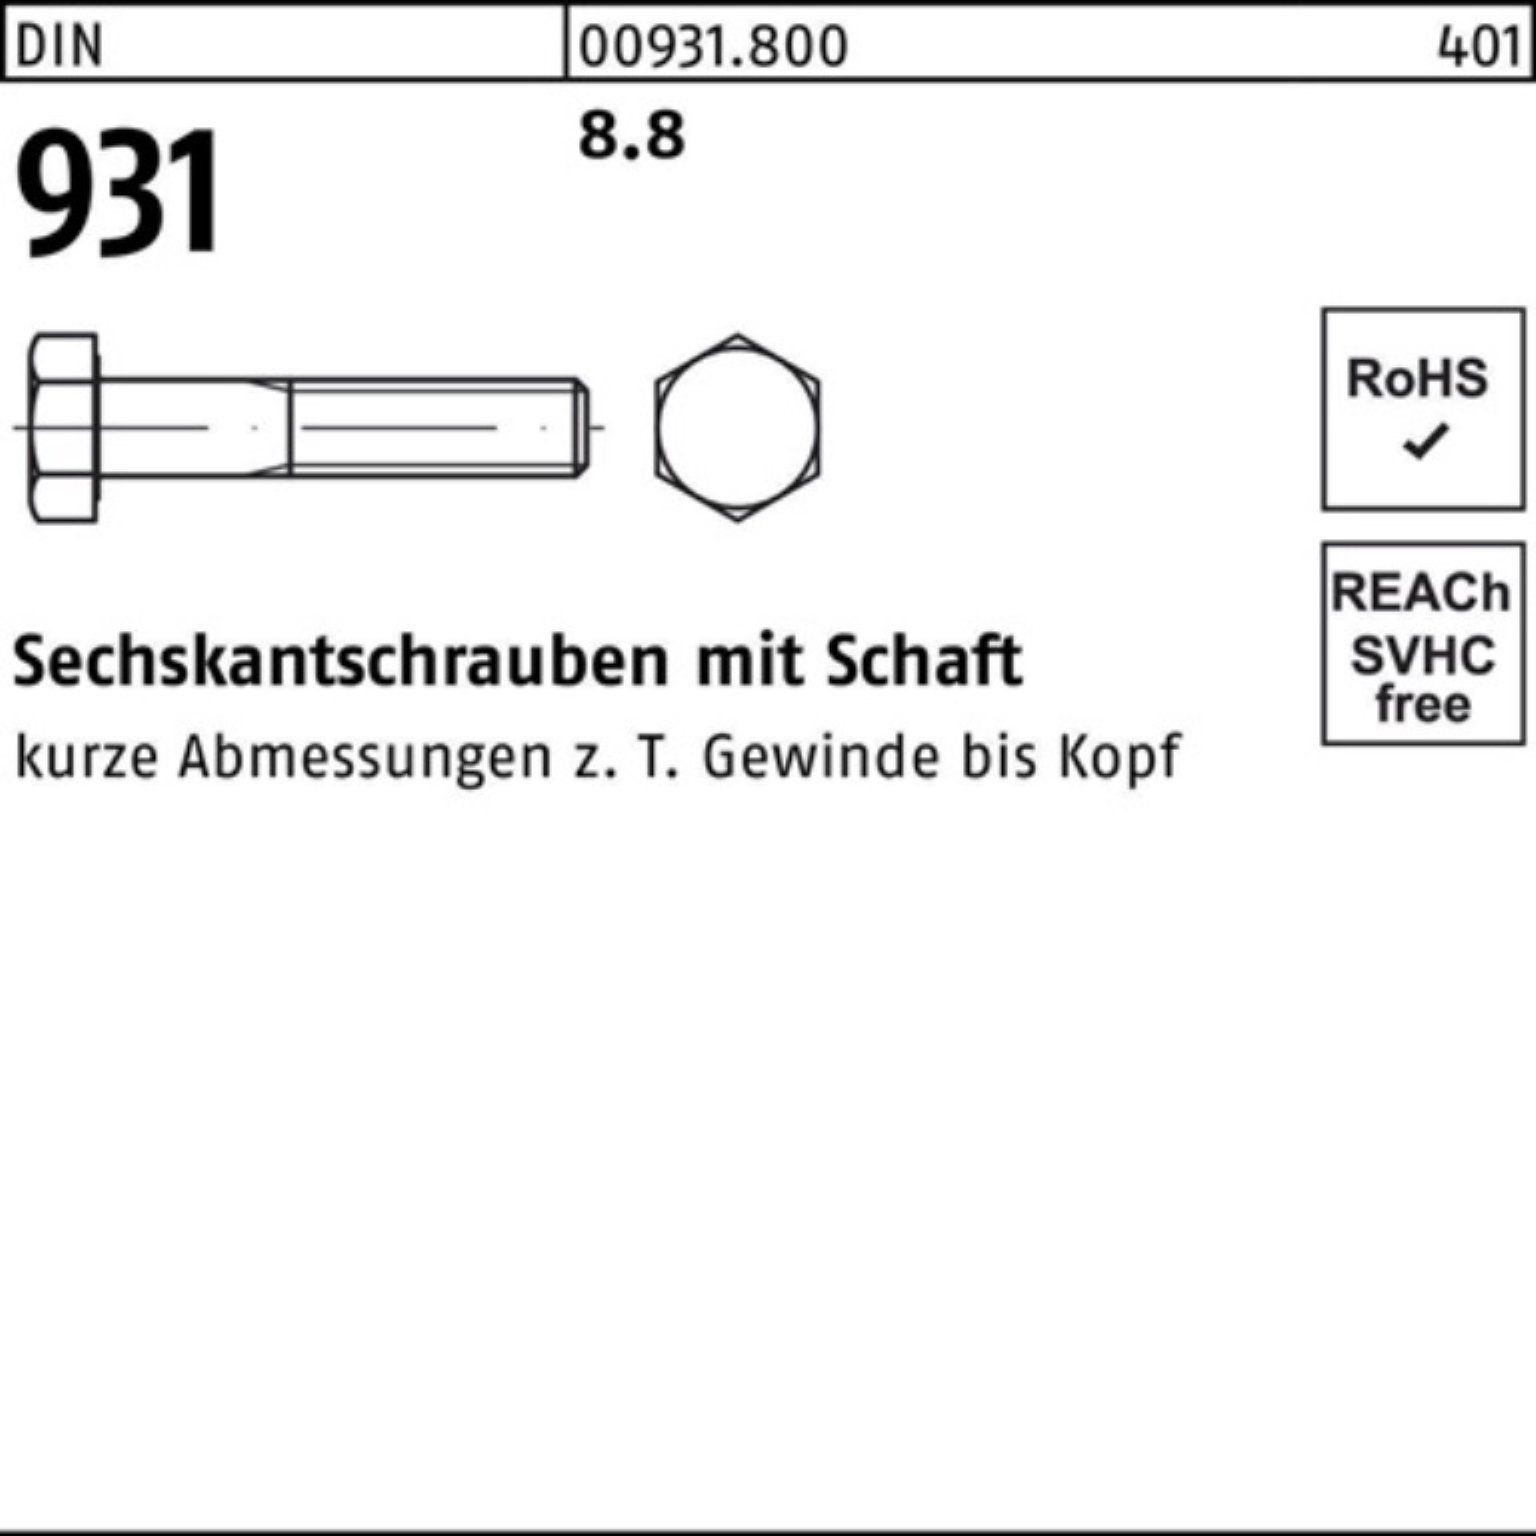 Sechskantschraube Reyher Schaft 8.8 931 Stück DIN Sechskantschraube Pack 100er 1 330 M36x DIN